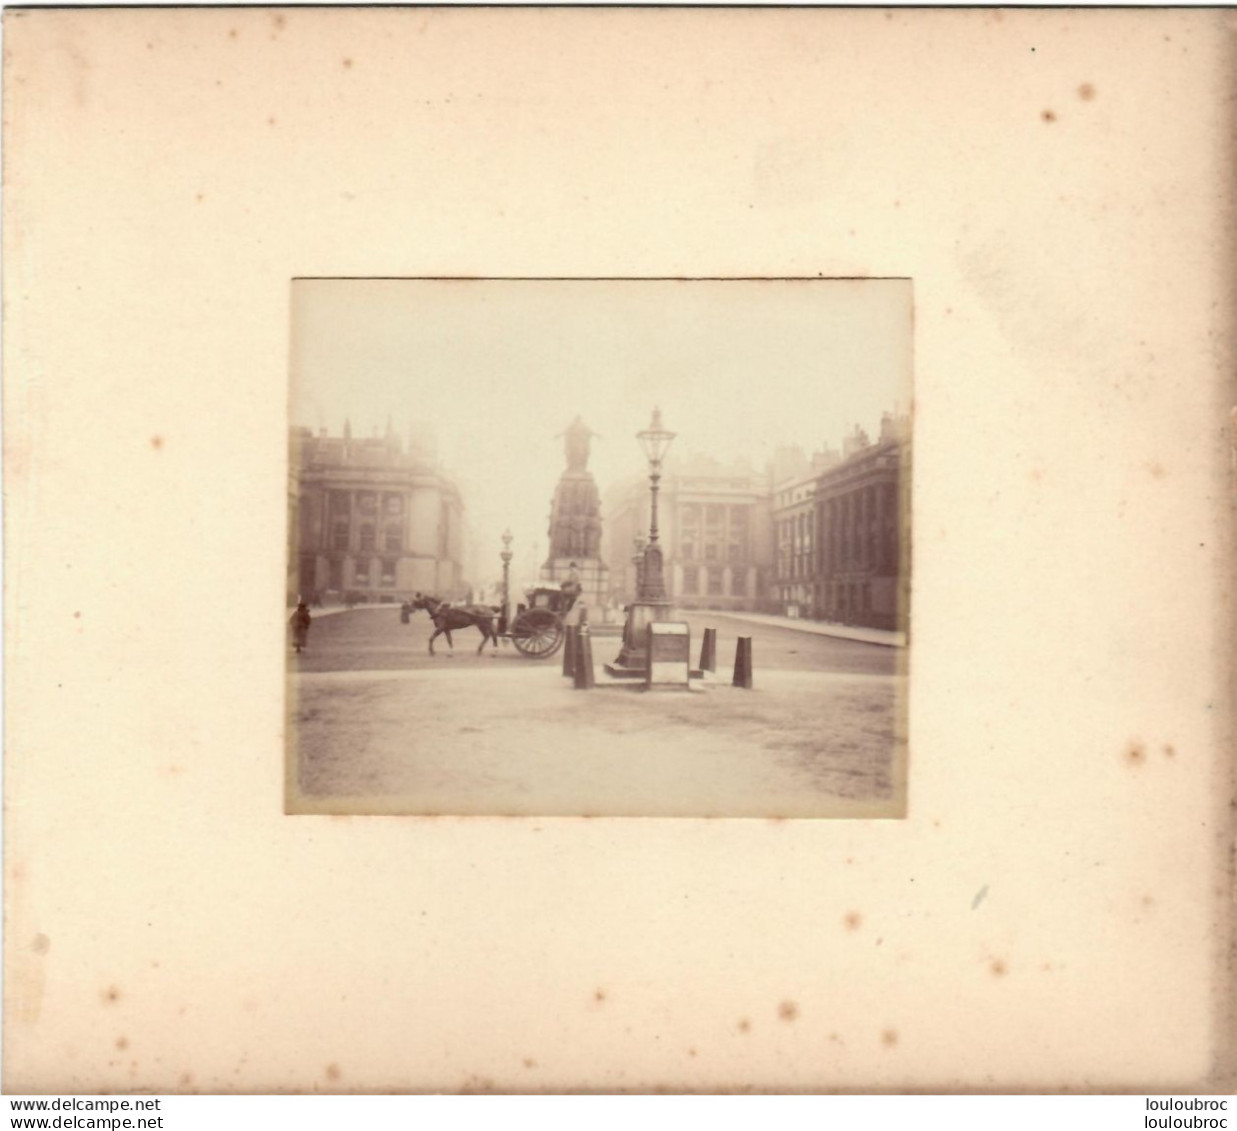 LONDRES MONUMENT DE CRIMEE  FIN 19em PHOTO ORIGINALE 8x7CM COLLEE SUR CARTON DE 18x13cm - Old (before 1900)